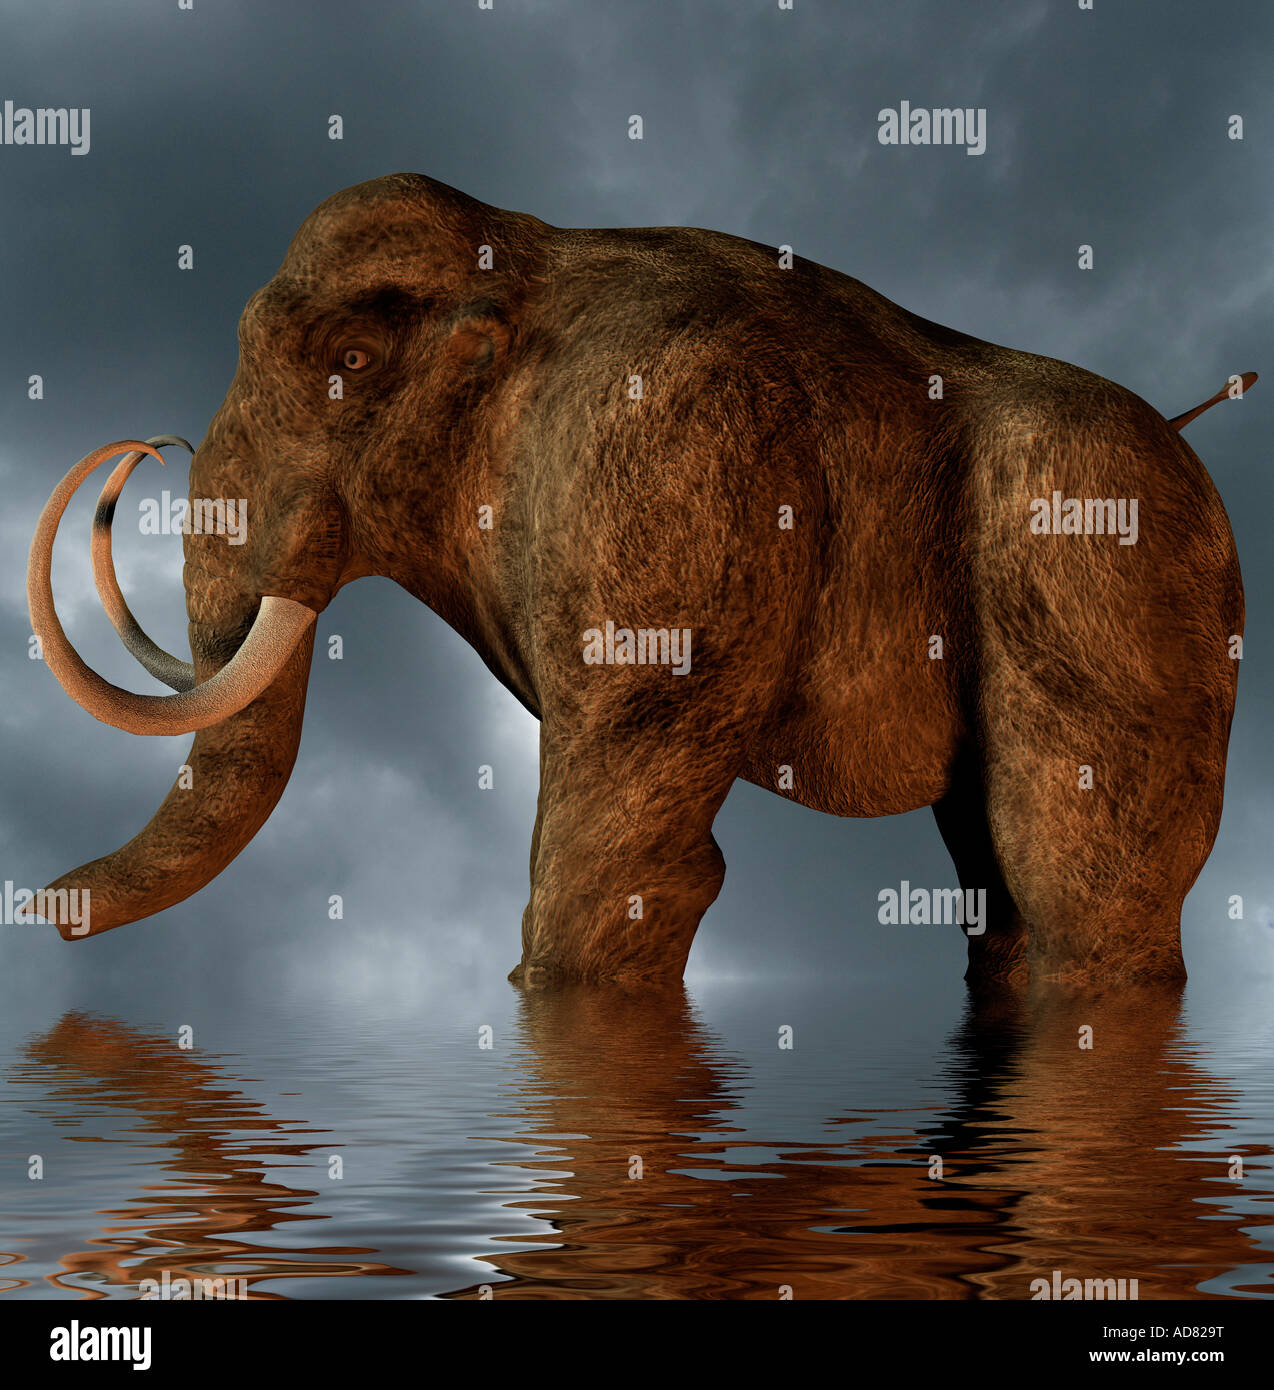 computergenerierte Konzept eines prähistorischen Mastodon Tieres in einem flachen See Stockfoto